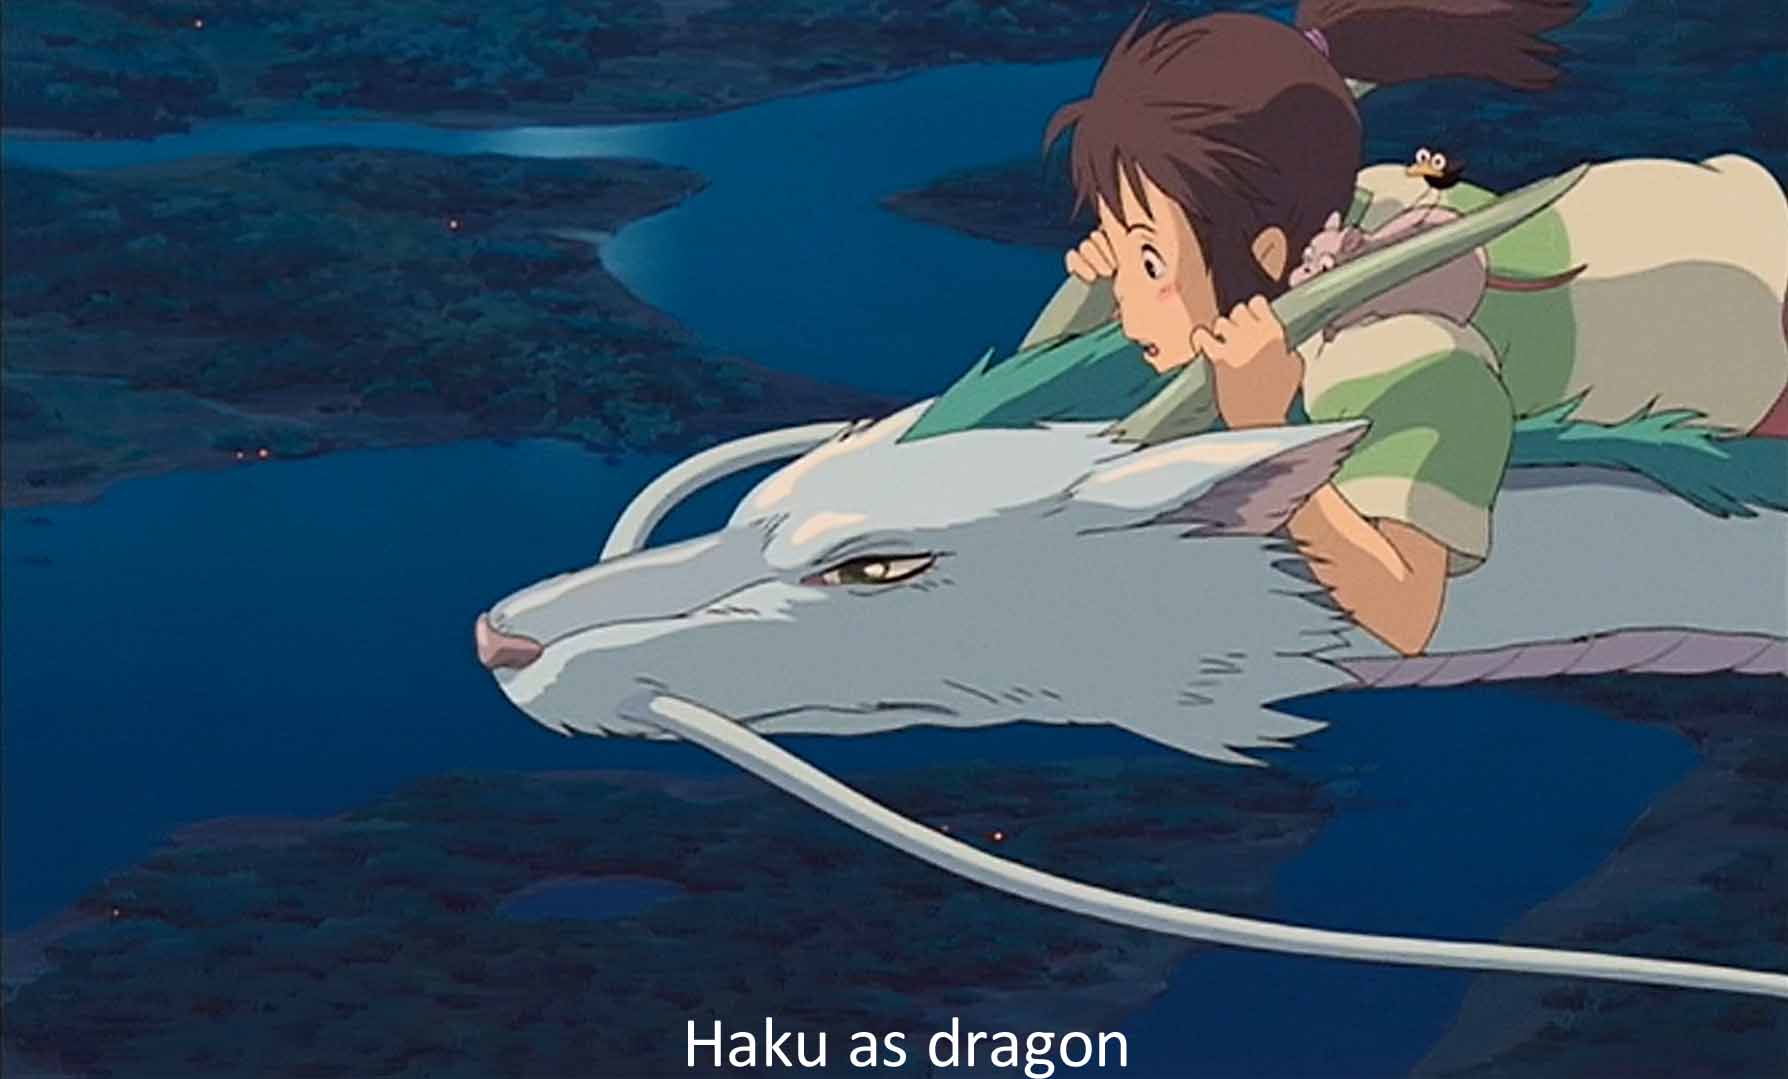 Haku as a dragon